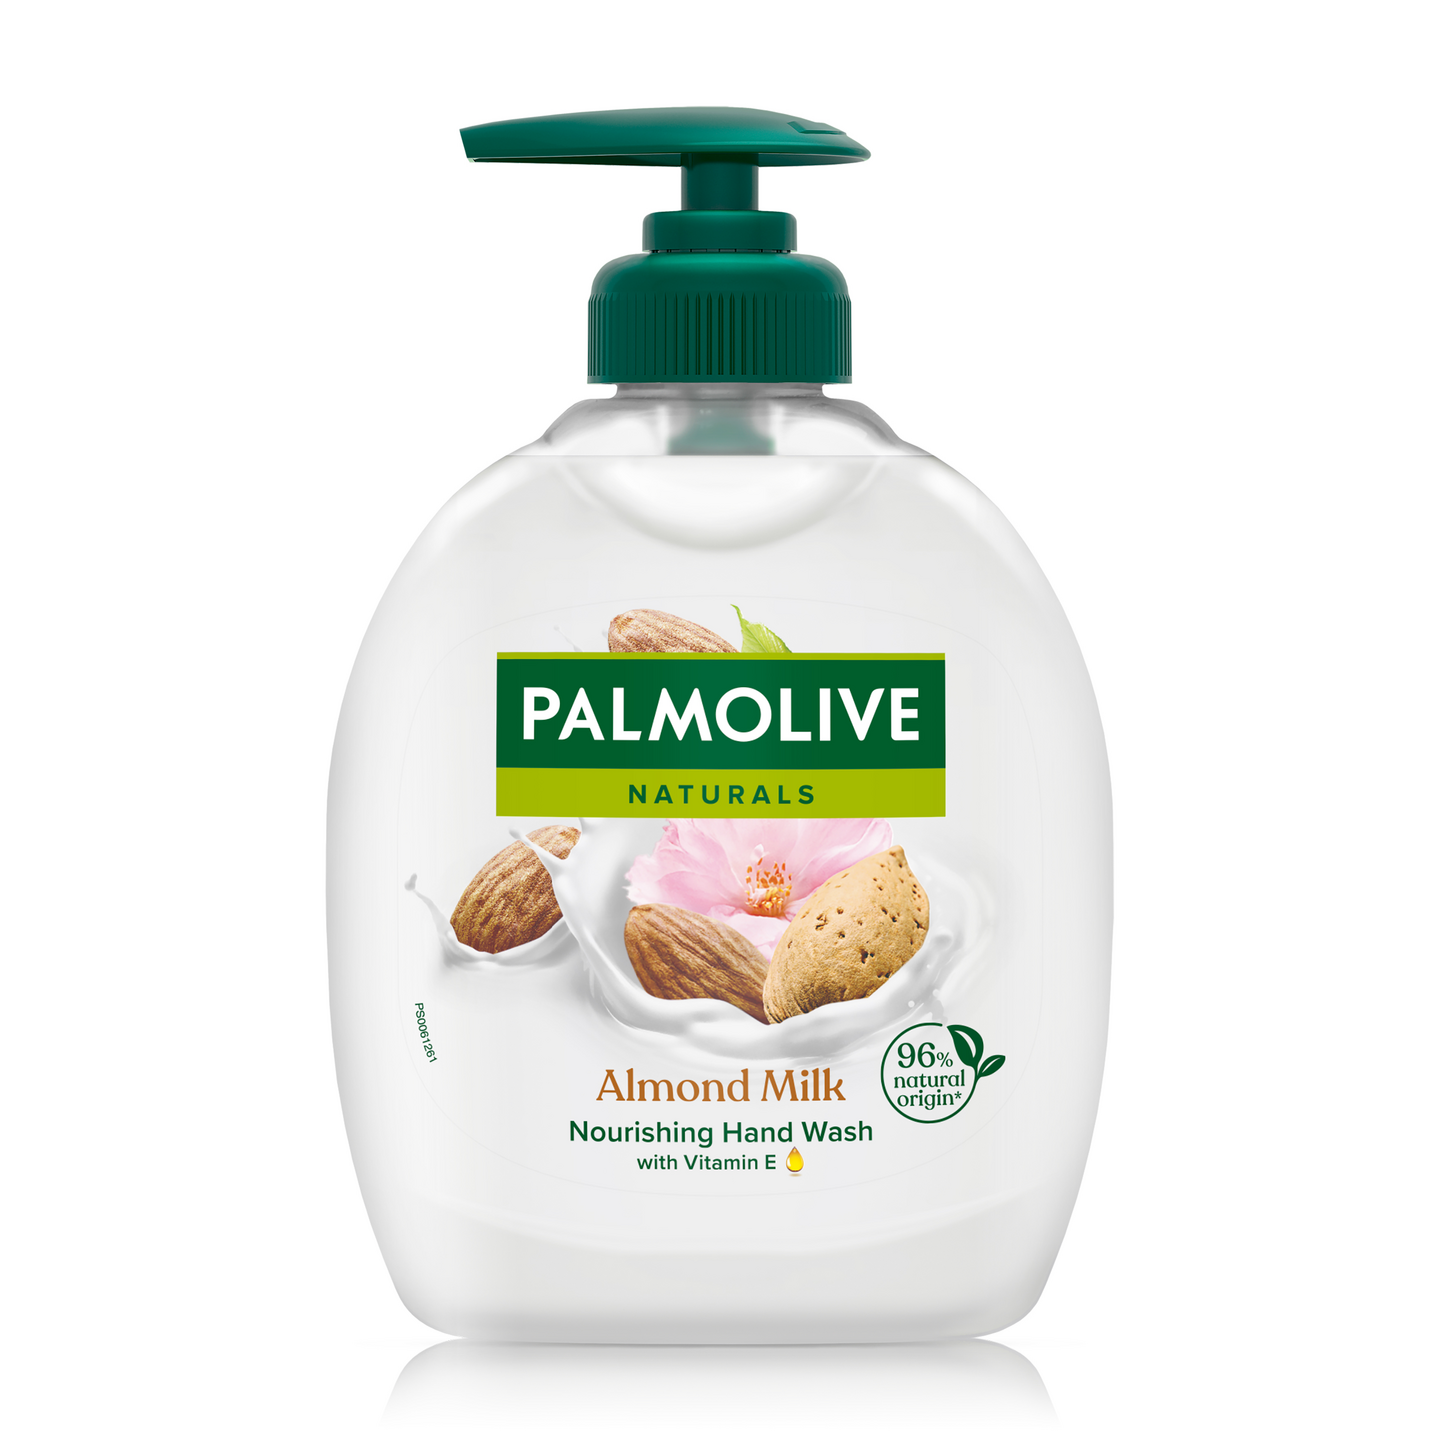 Palmolive Naturals nestesaippua 300ml Almond & Milk